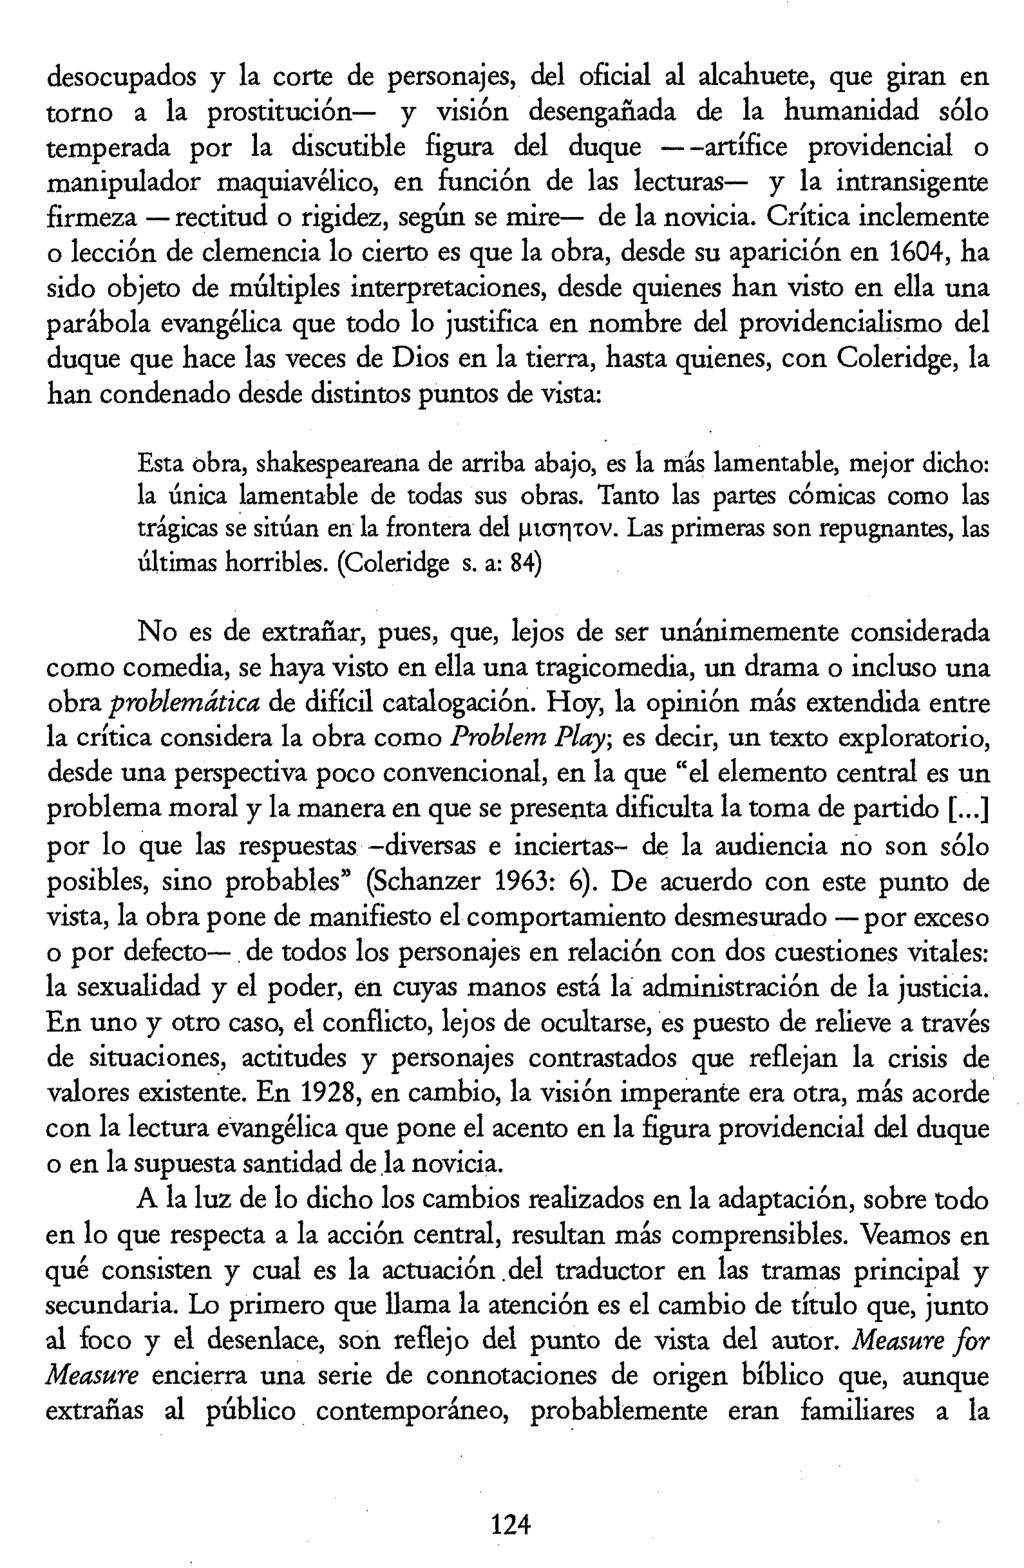 Luis Pegenaute (Ed.) La traducción en la Edad de Plata